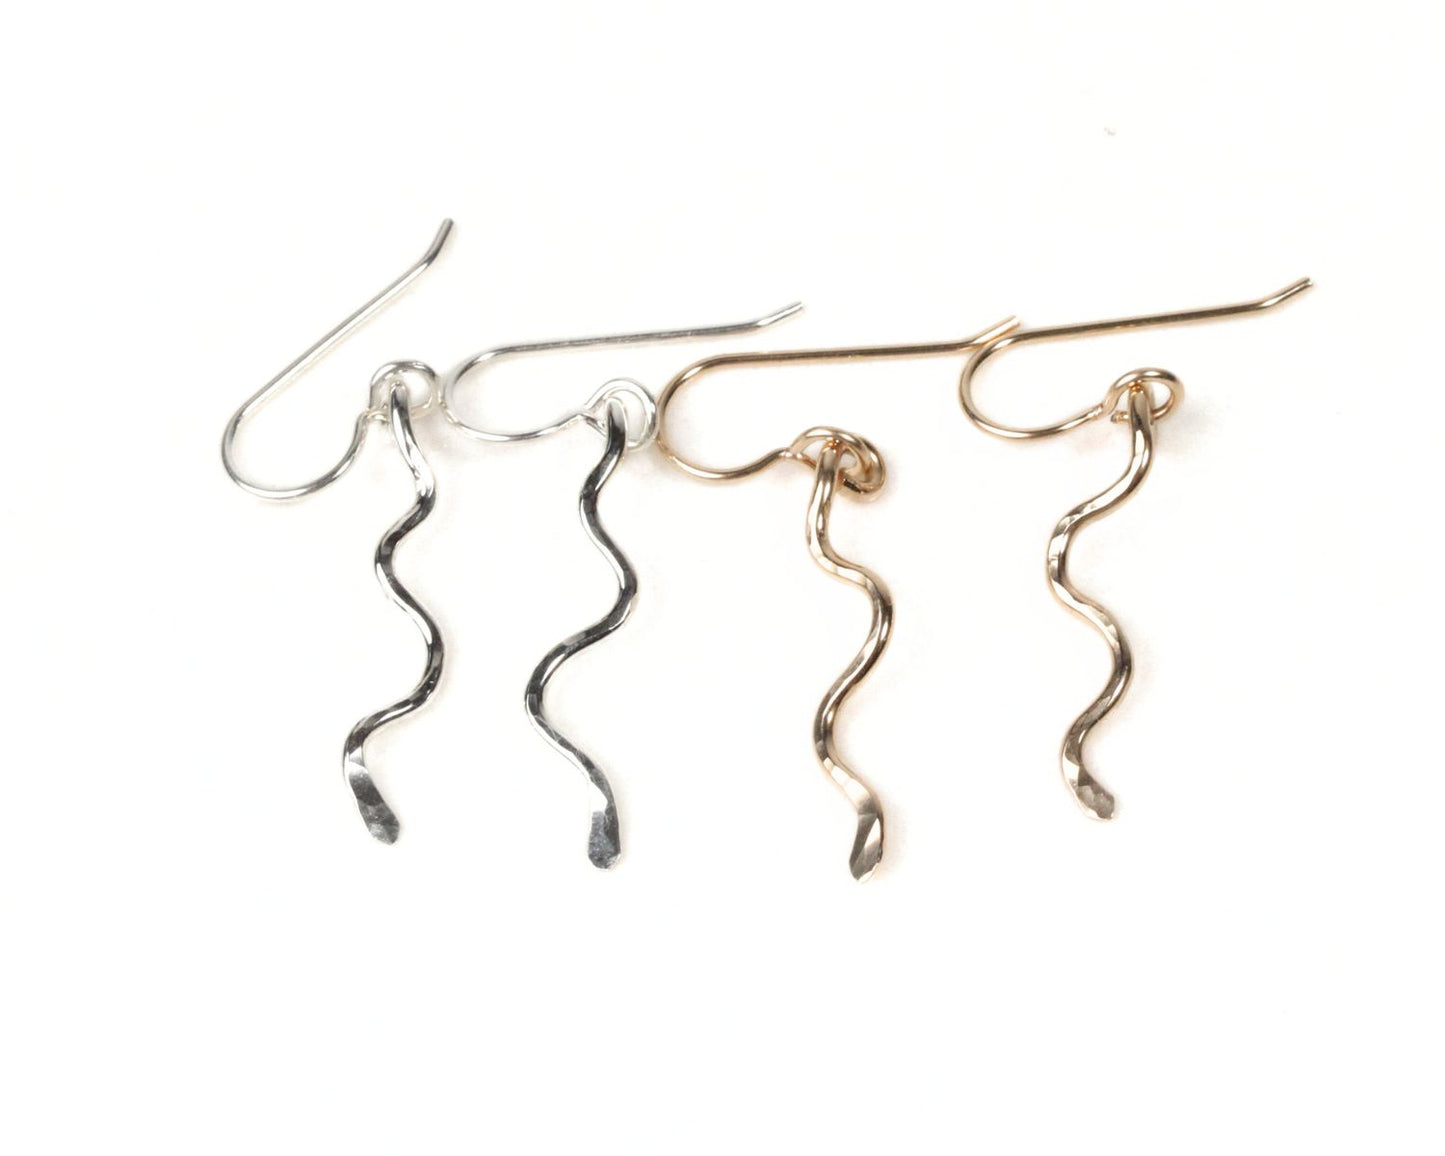 Mini Serpent Drop Earrings